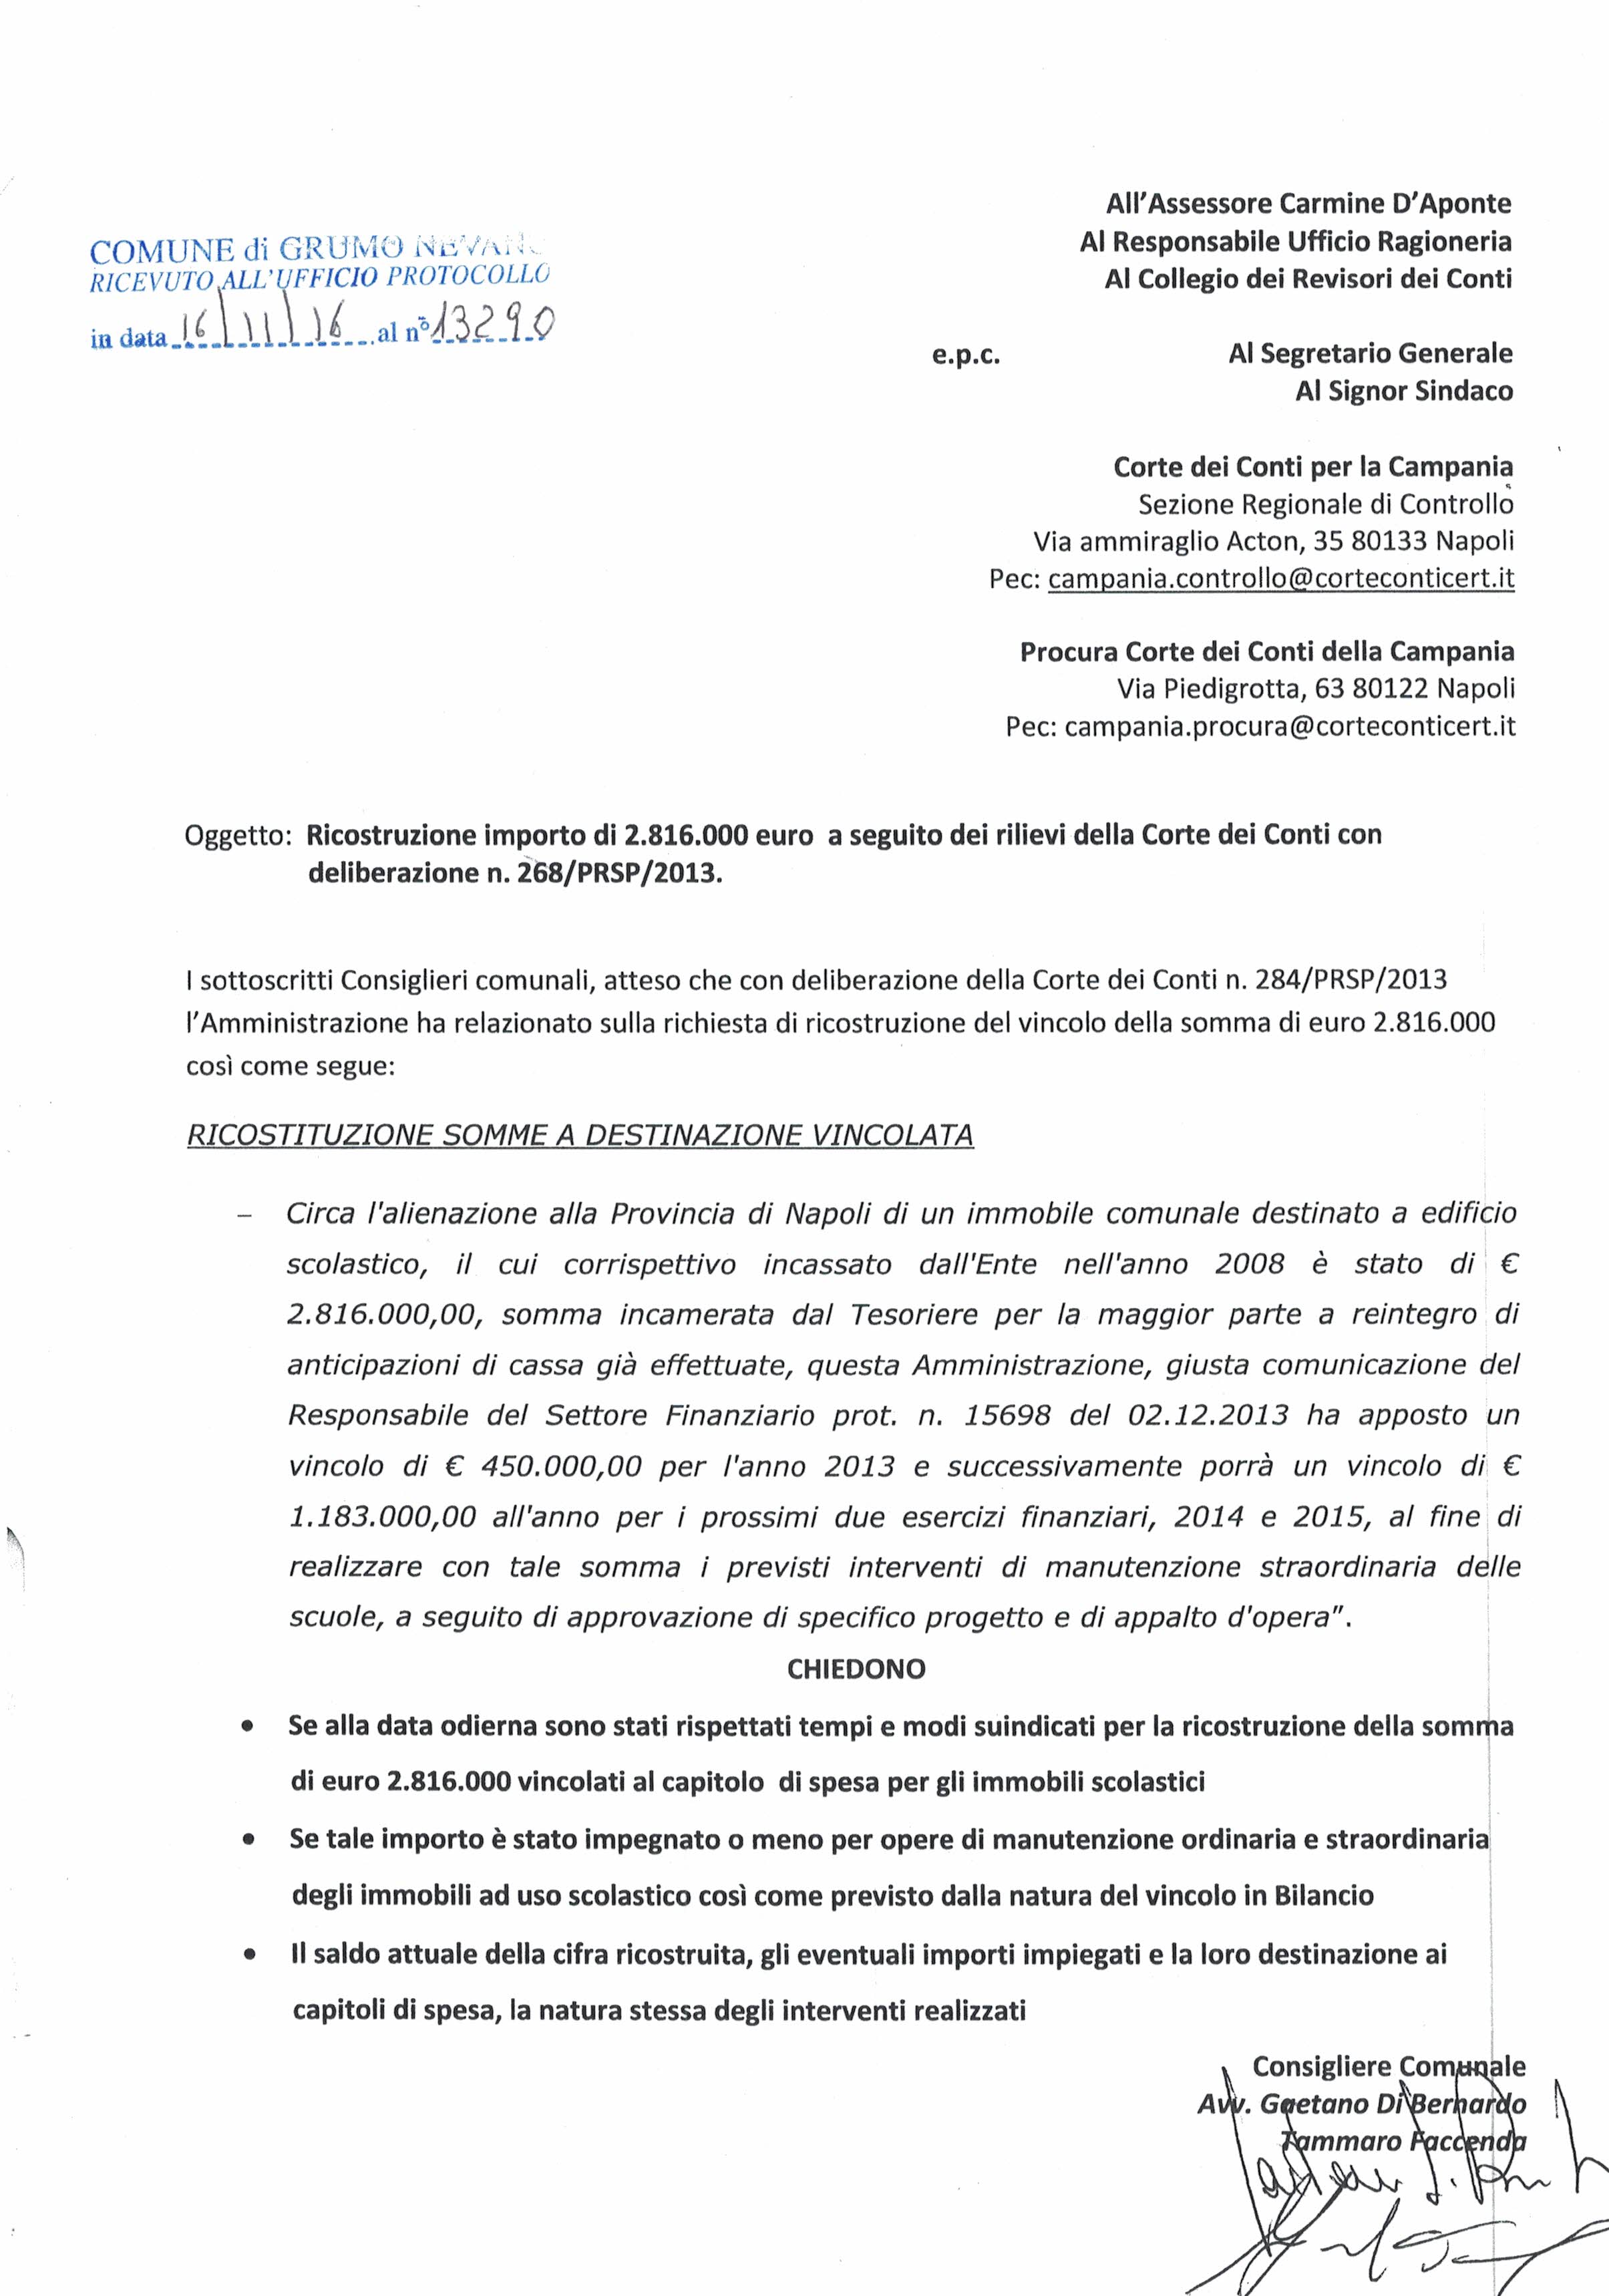 di-bernardo-richiesta-2816000-euro-scuole